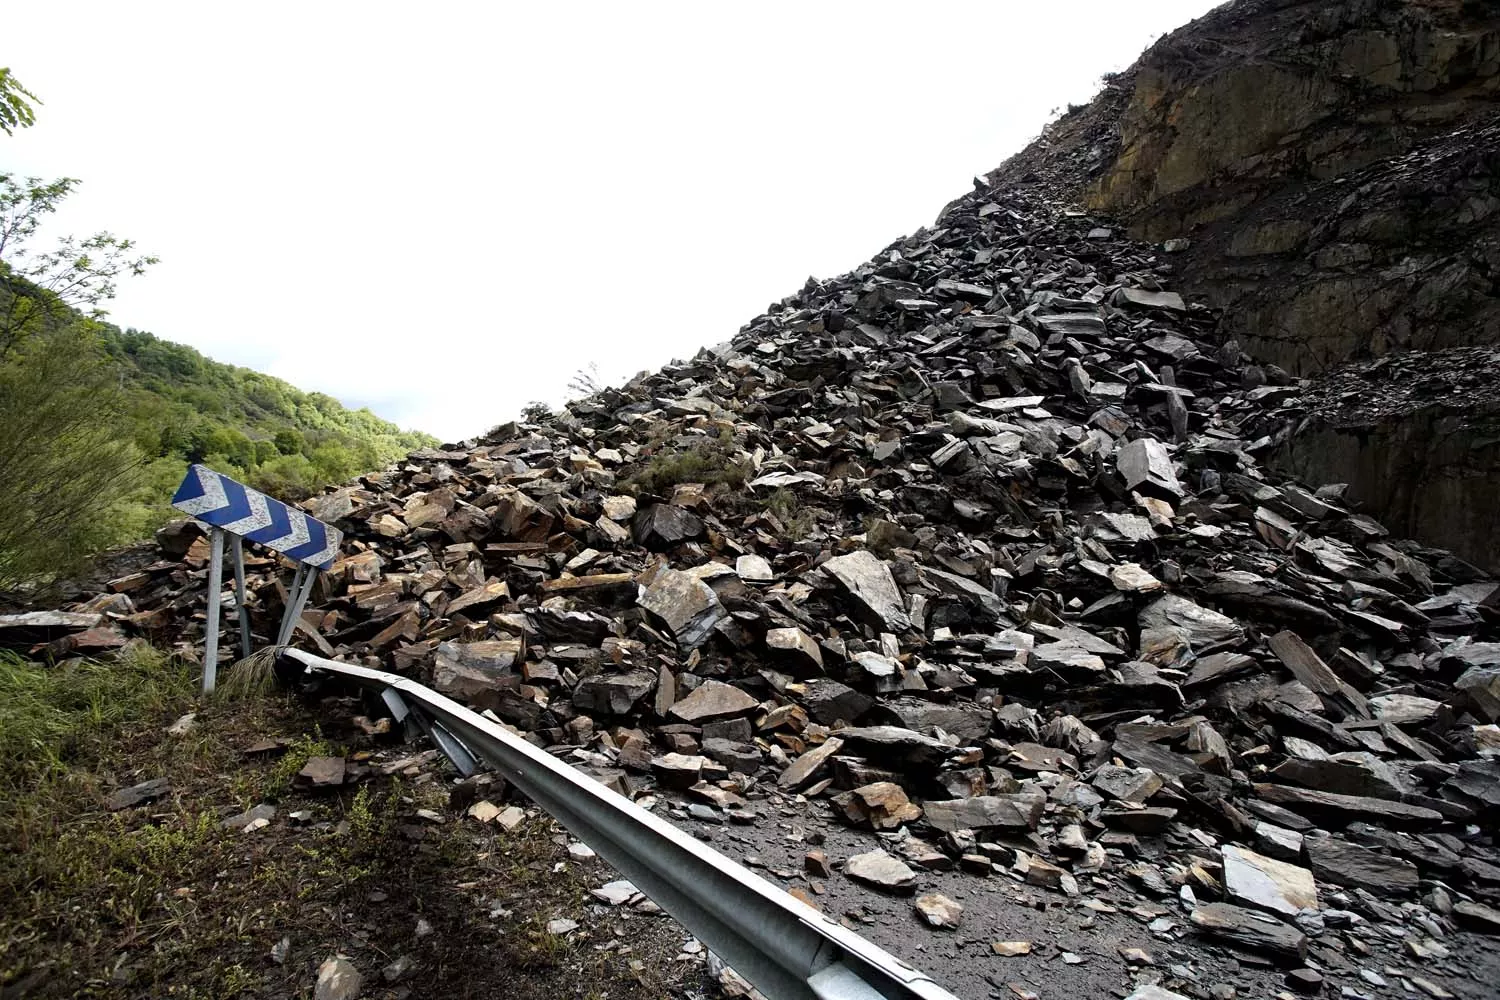 Desprendimiento de rocas y tierra en la carretera CL 631 en la localidad de Páramo del Sil (13)